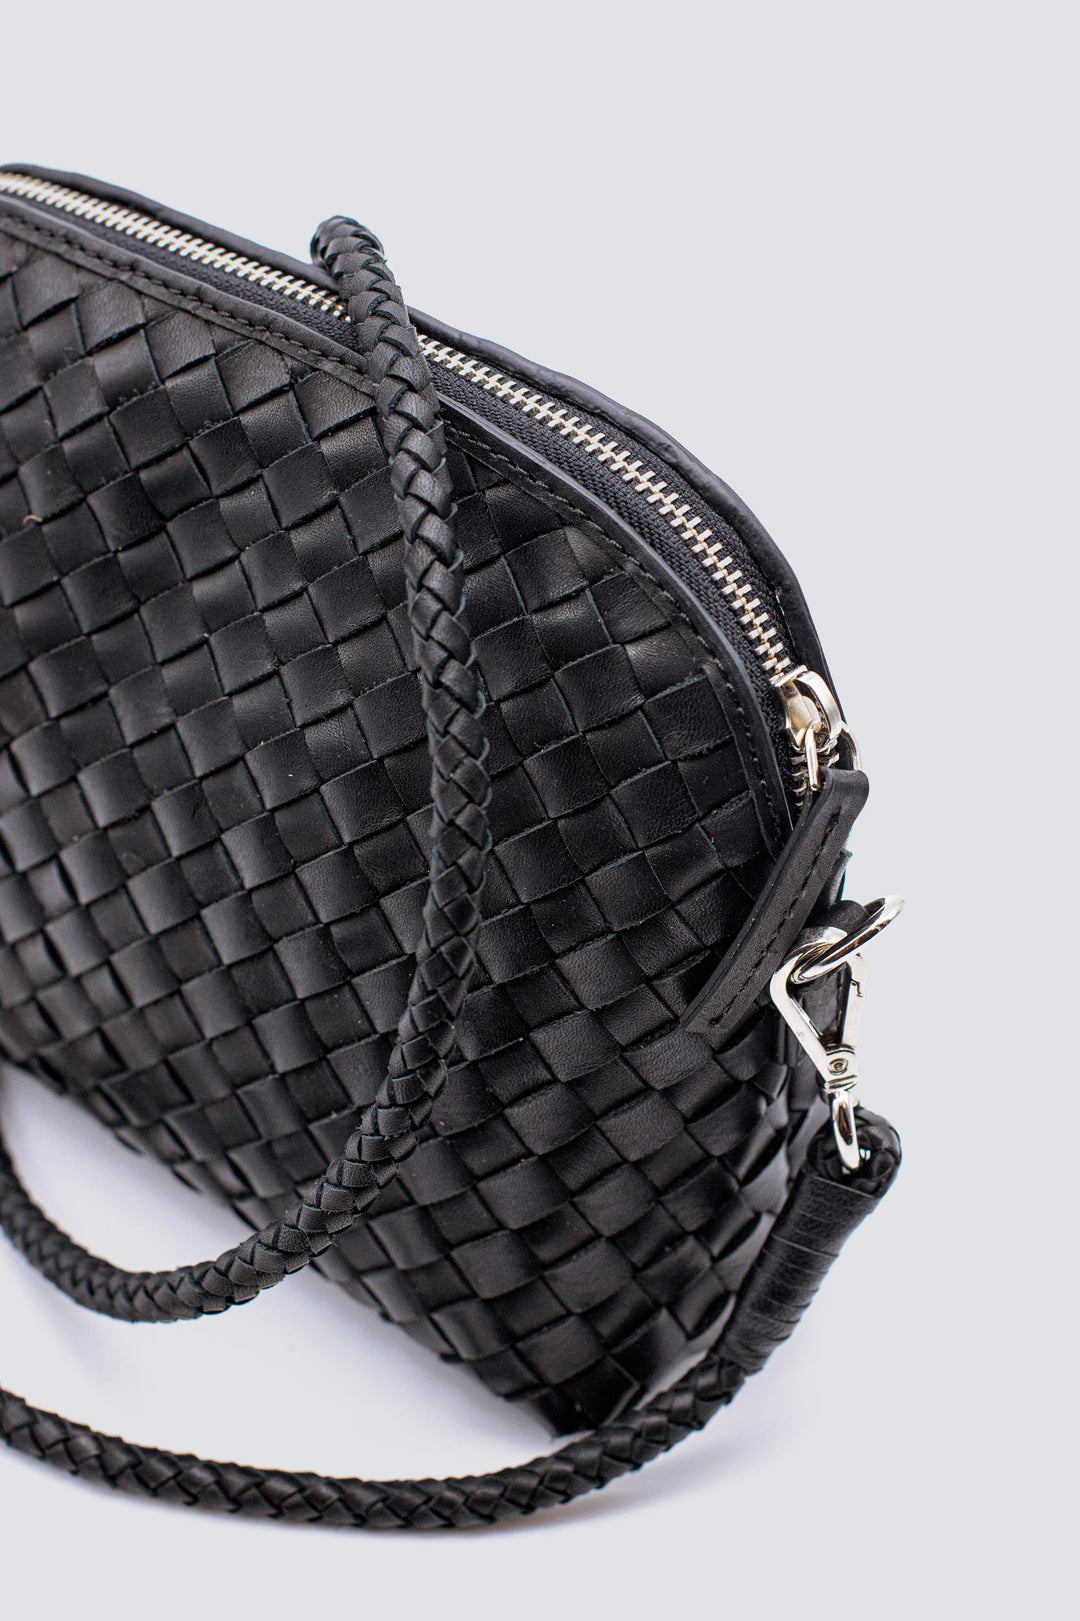 Dragon Diffusion woven leather bag handmade - Fellini Pochette Black